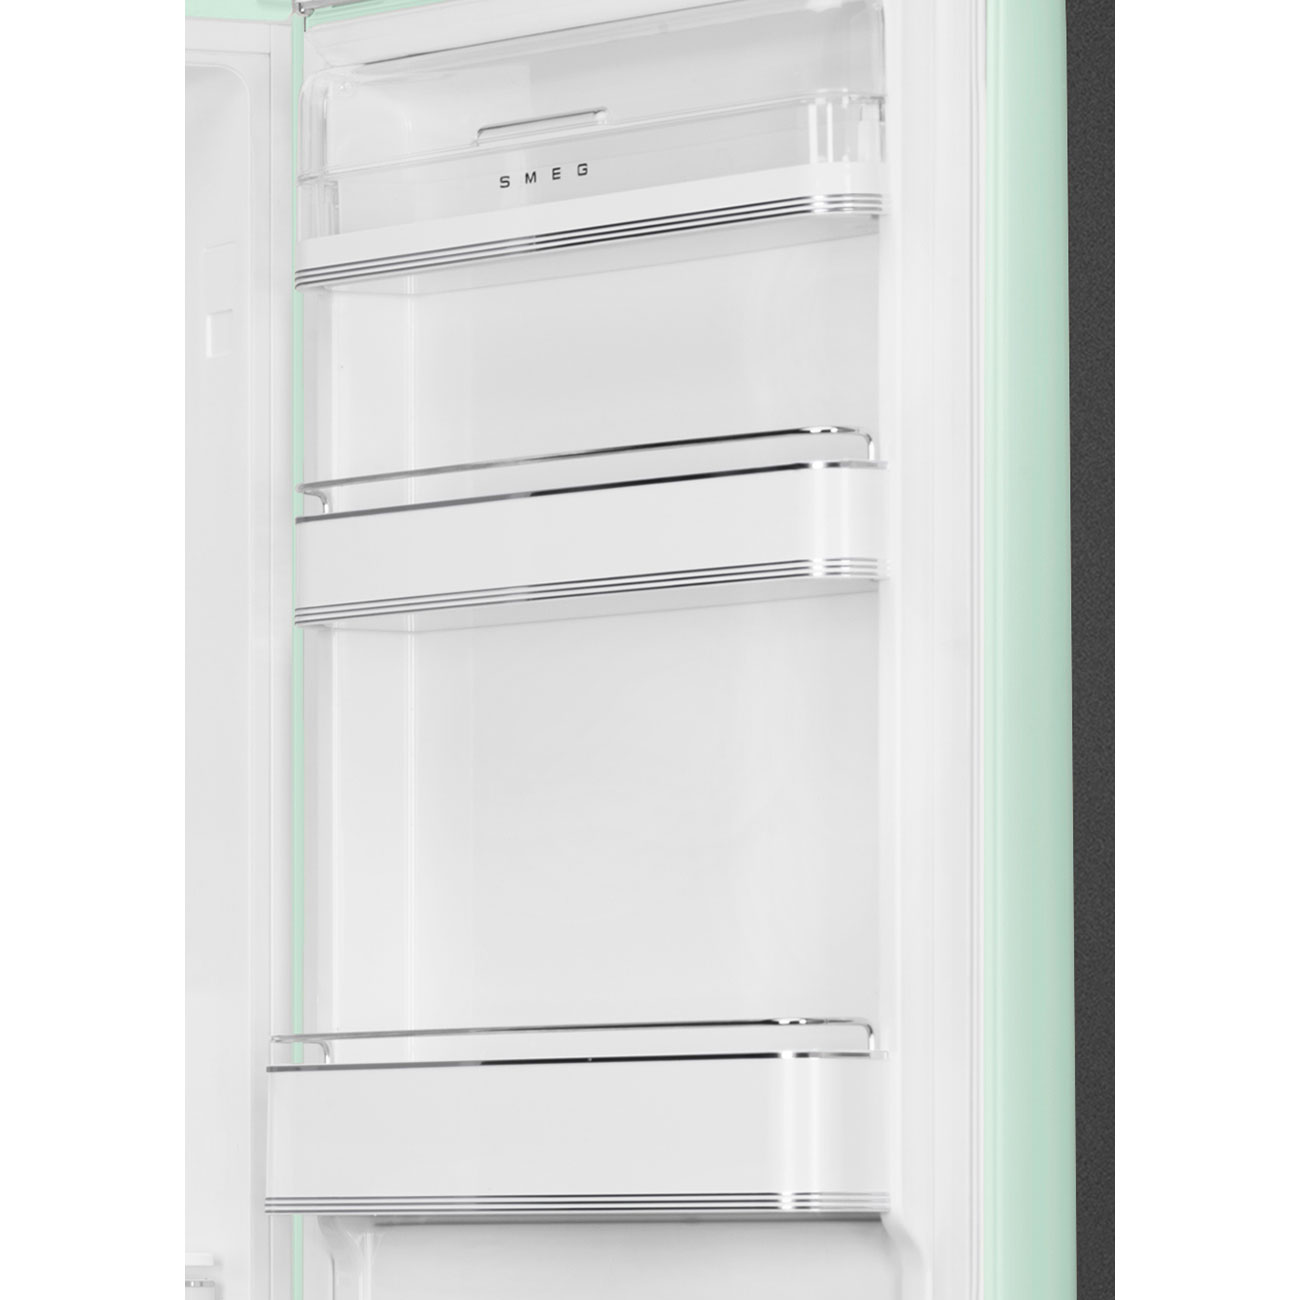 SMEG FAB32RPG5 Отдельностоящий двухдверный холодильник, стиль 50-х годов, 60 см, светло-зеленый, No-frost, петли справа